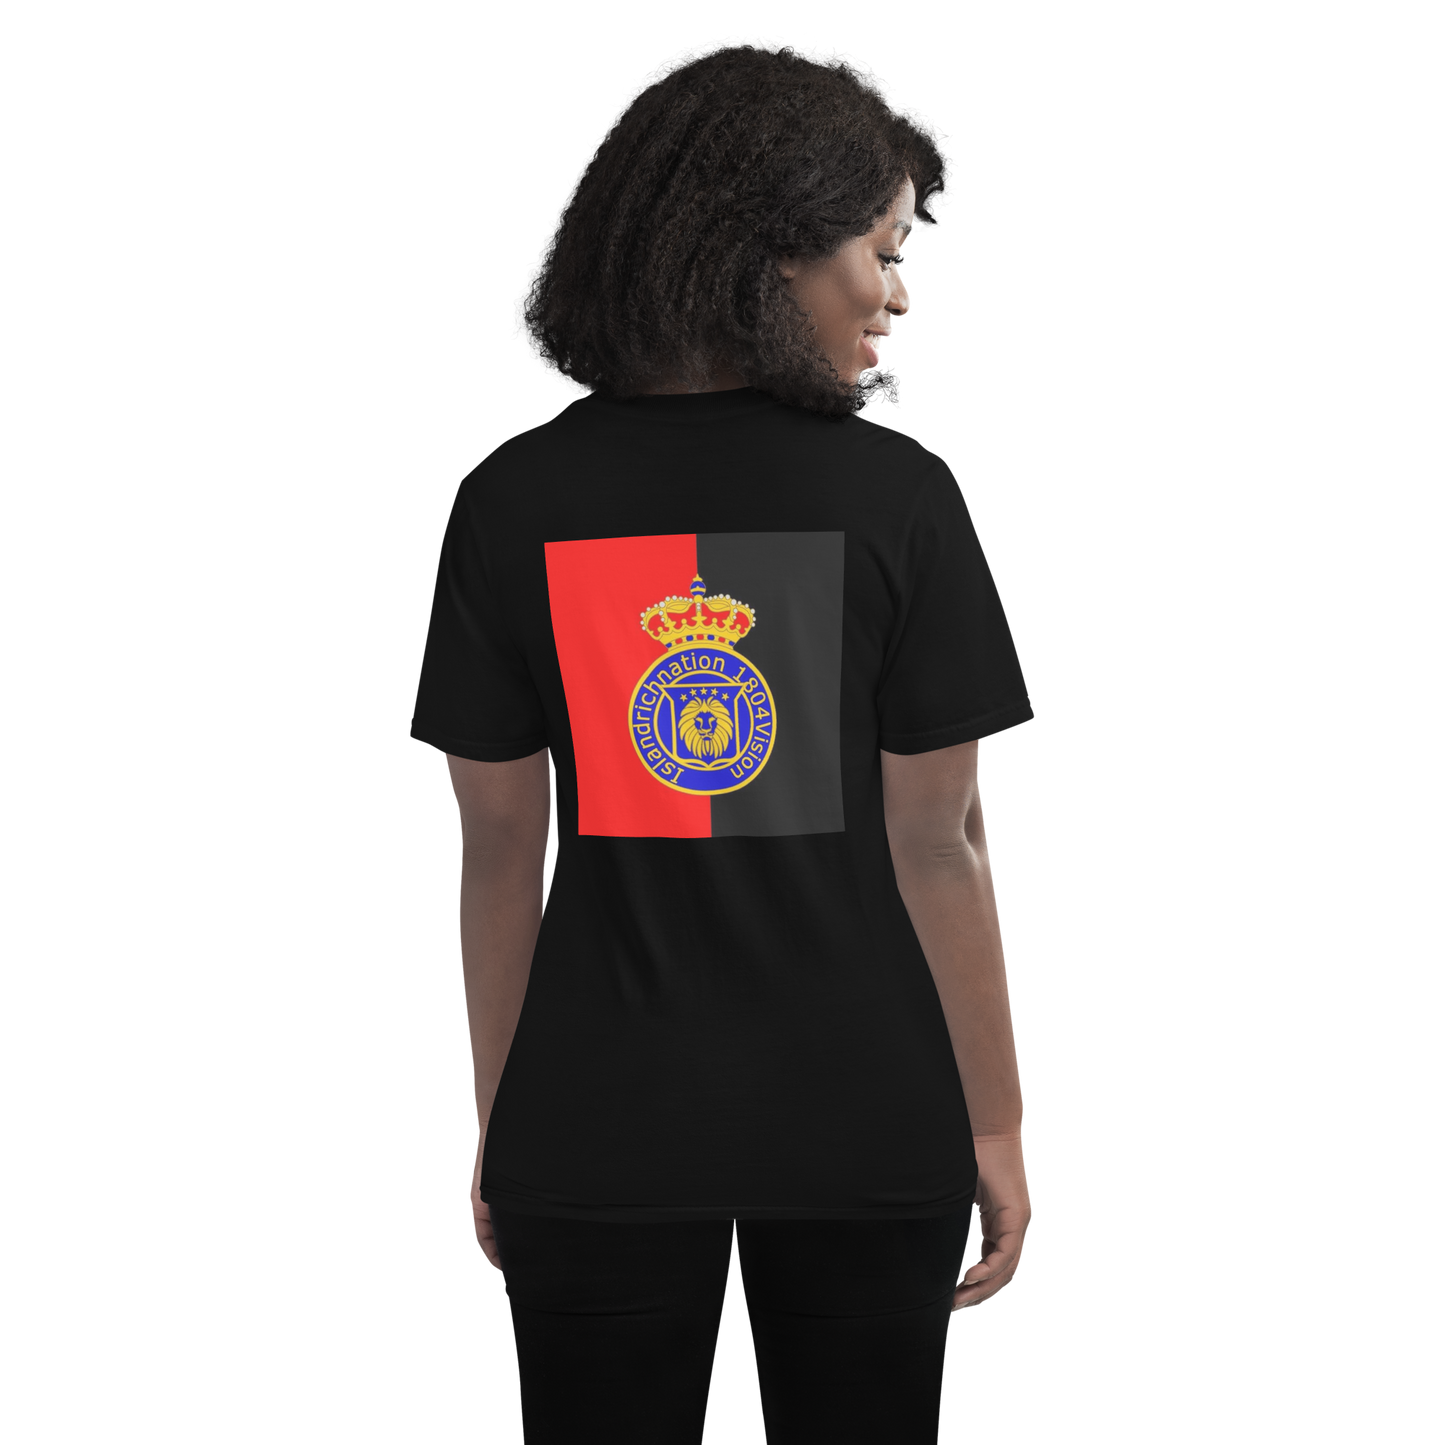 Dessaline Short-Sleeve T-Shirt